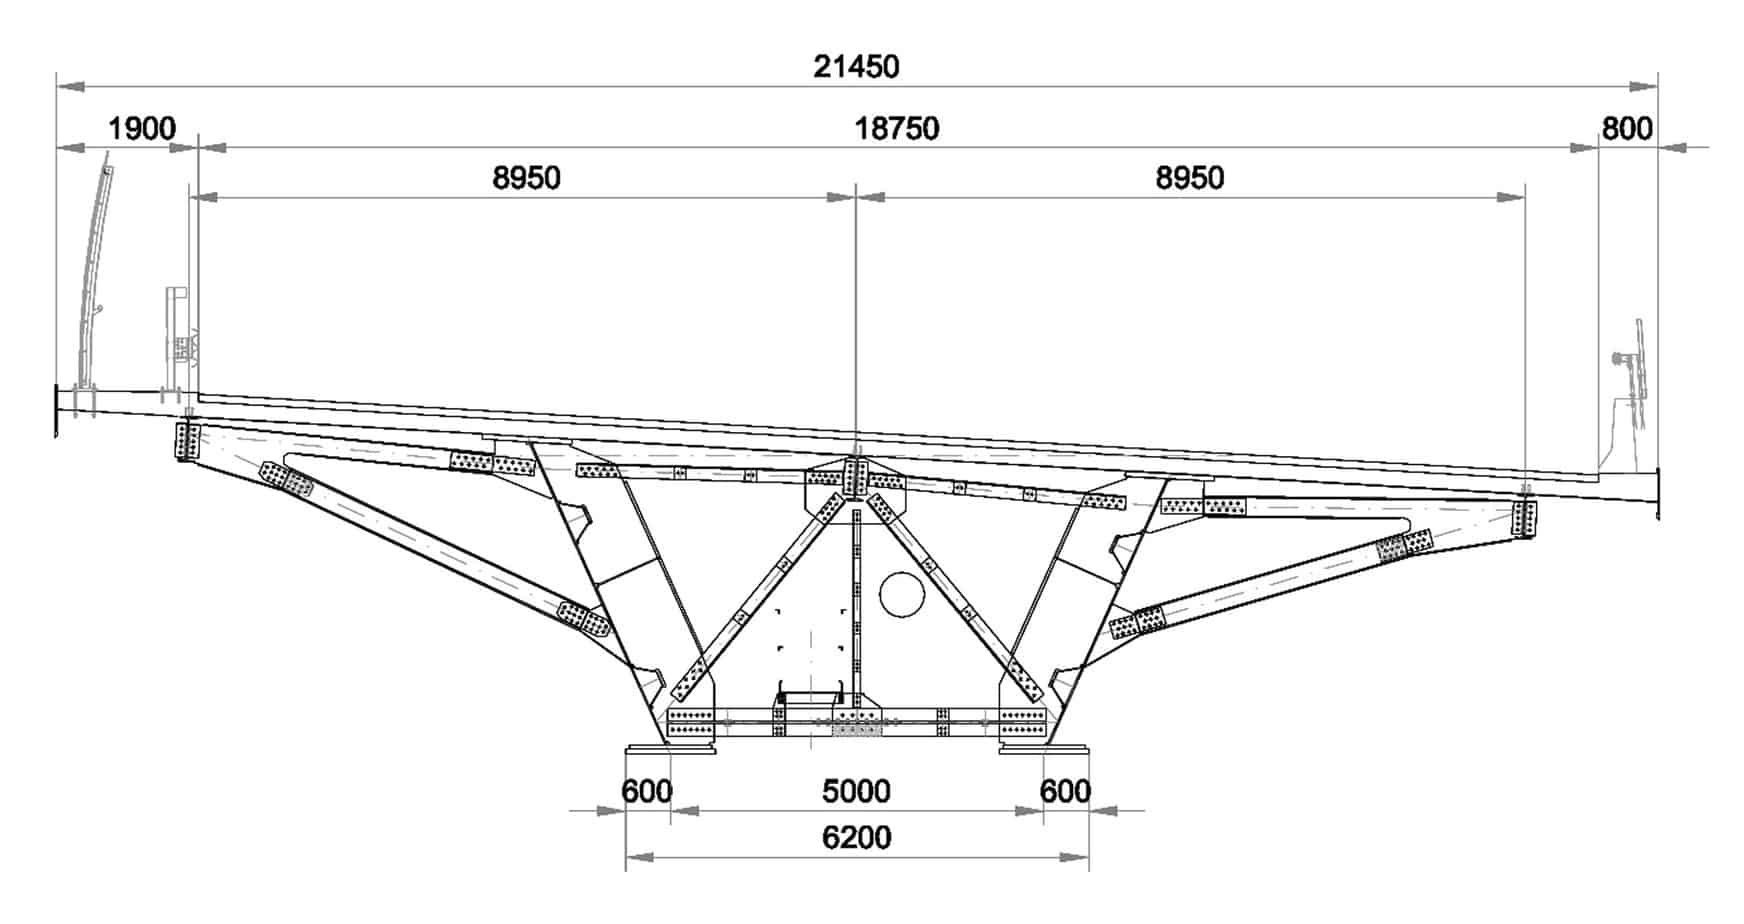 La sezione trasversale dell’impalcato del viadotto VI004 P16-P19 (dimensioni in mm)